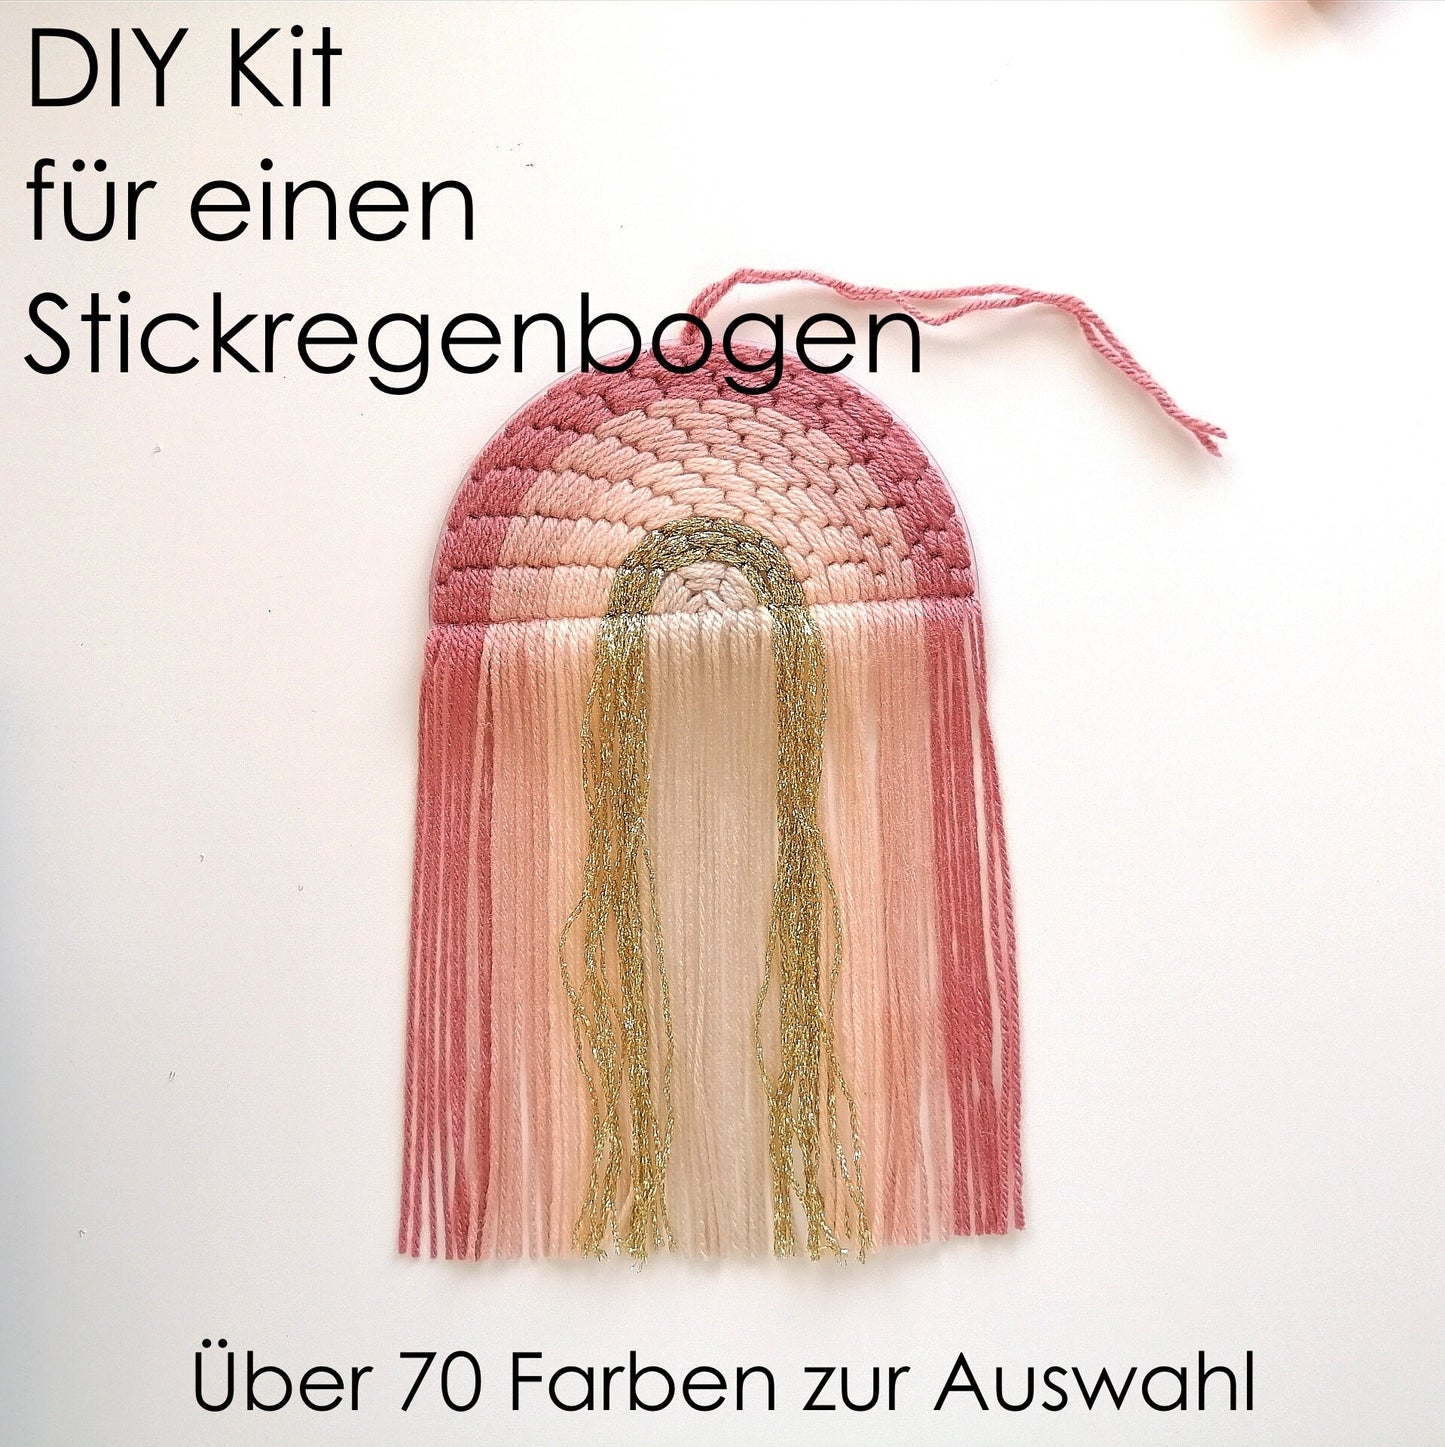 DIY Stickregenbogen Kit PDF Tutorial Craft Kit Fiber Rainbow Plastic Canvas Rainbow Boho Kinderzimmer Weihnachtsgeschenk